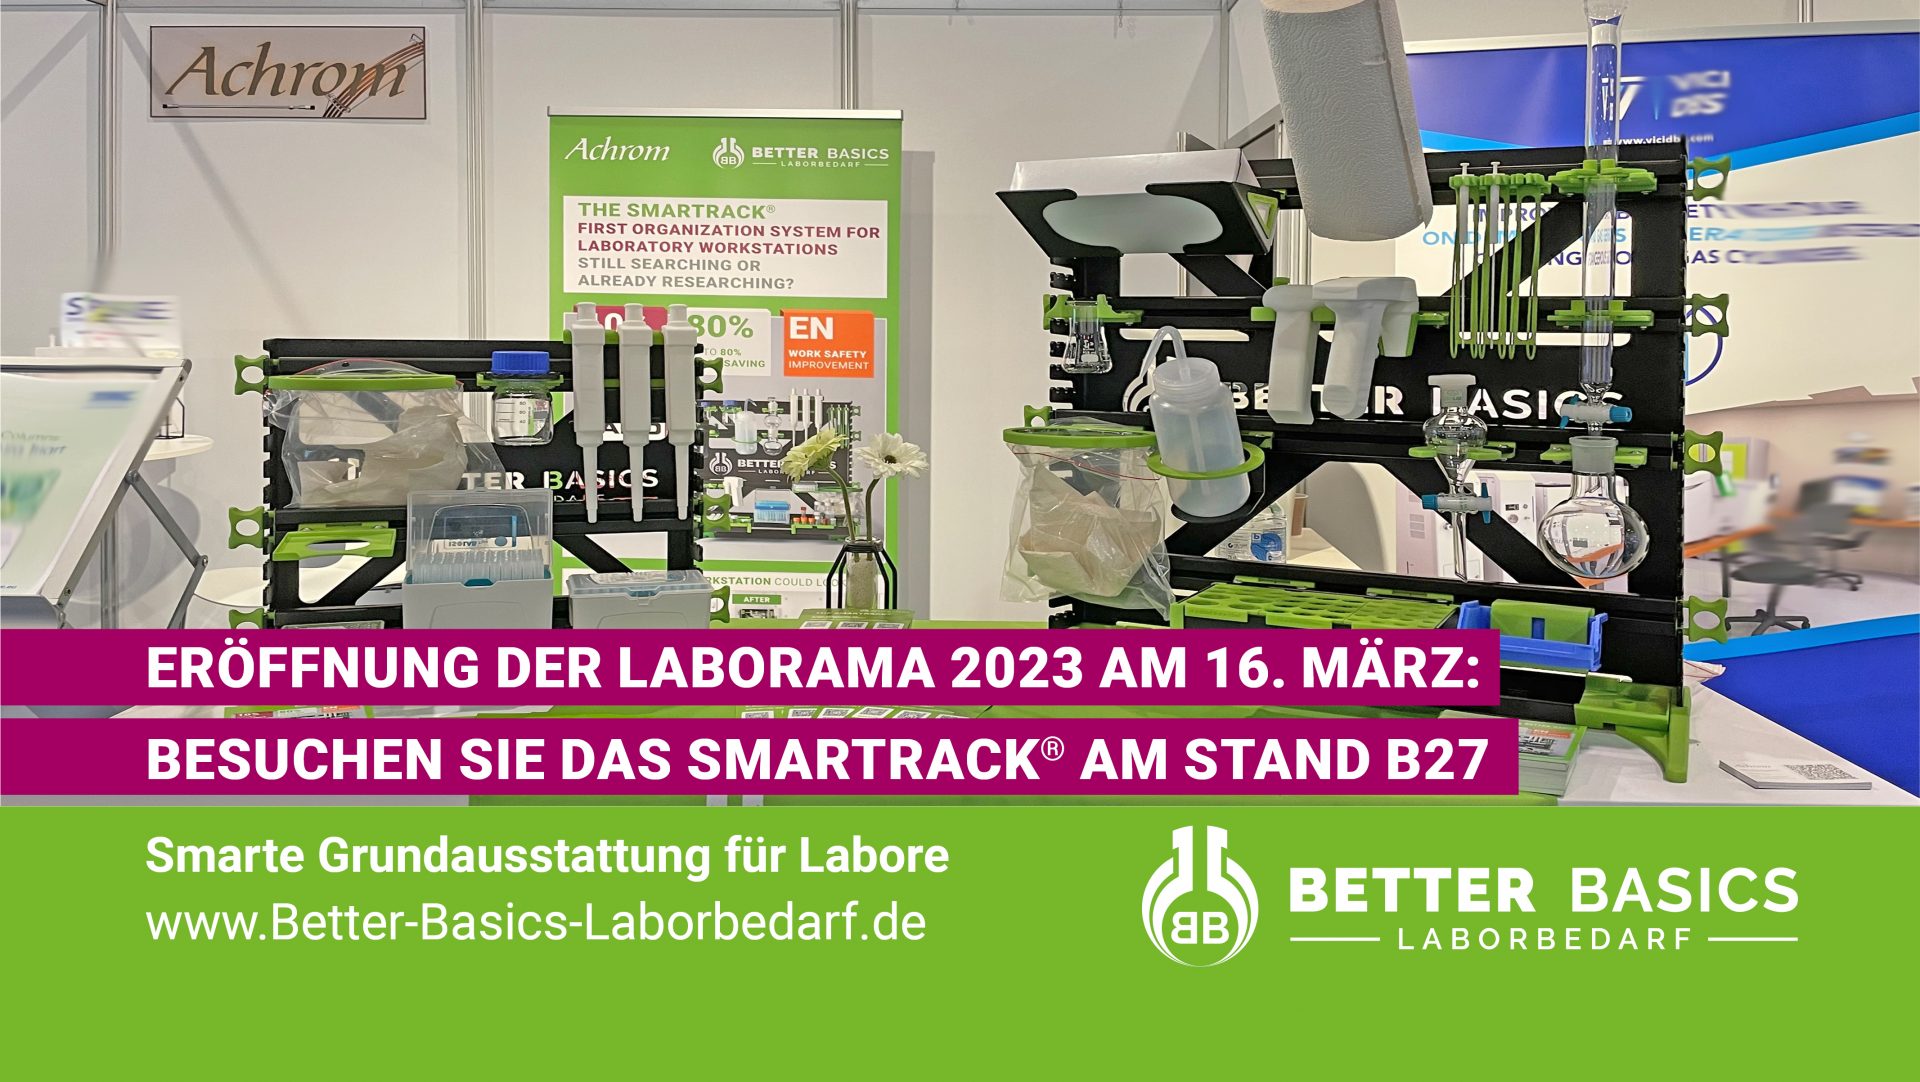 Eröffnung der Laborama 2023 am 16. März: Besuchen Sie das SmartRack® am Stand B27 unseres Partners Achrom